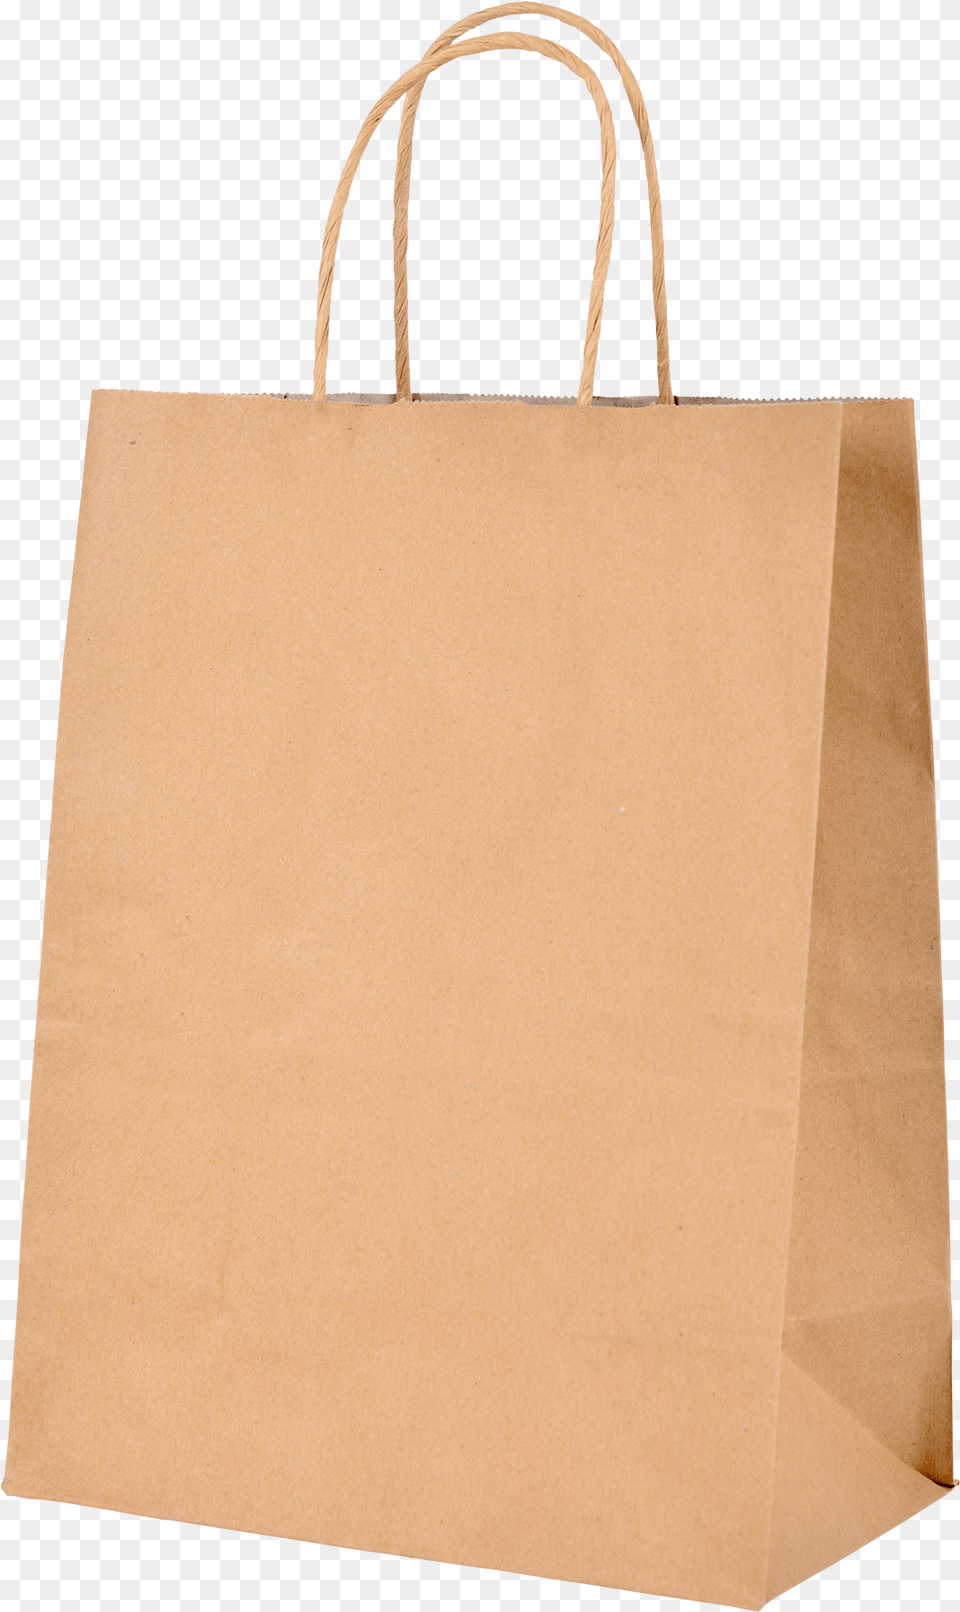 Packaging Vector Plastic Bag Customized Kraft Paper Bag, Accessories, Handbag, Tote Bag, Shopping Bag Png